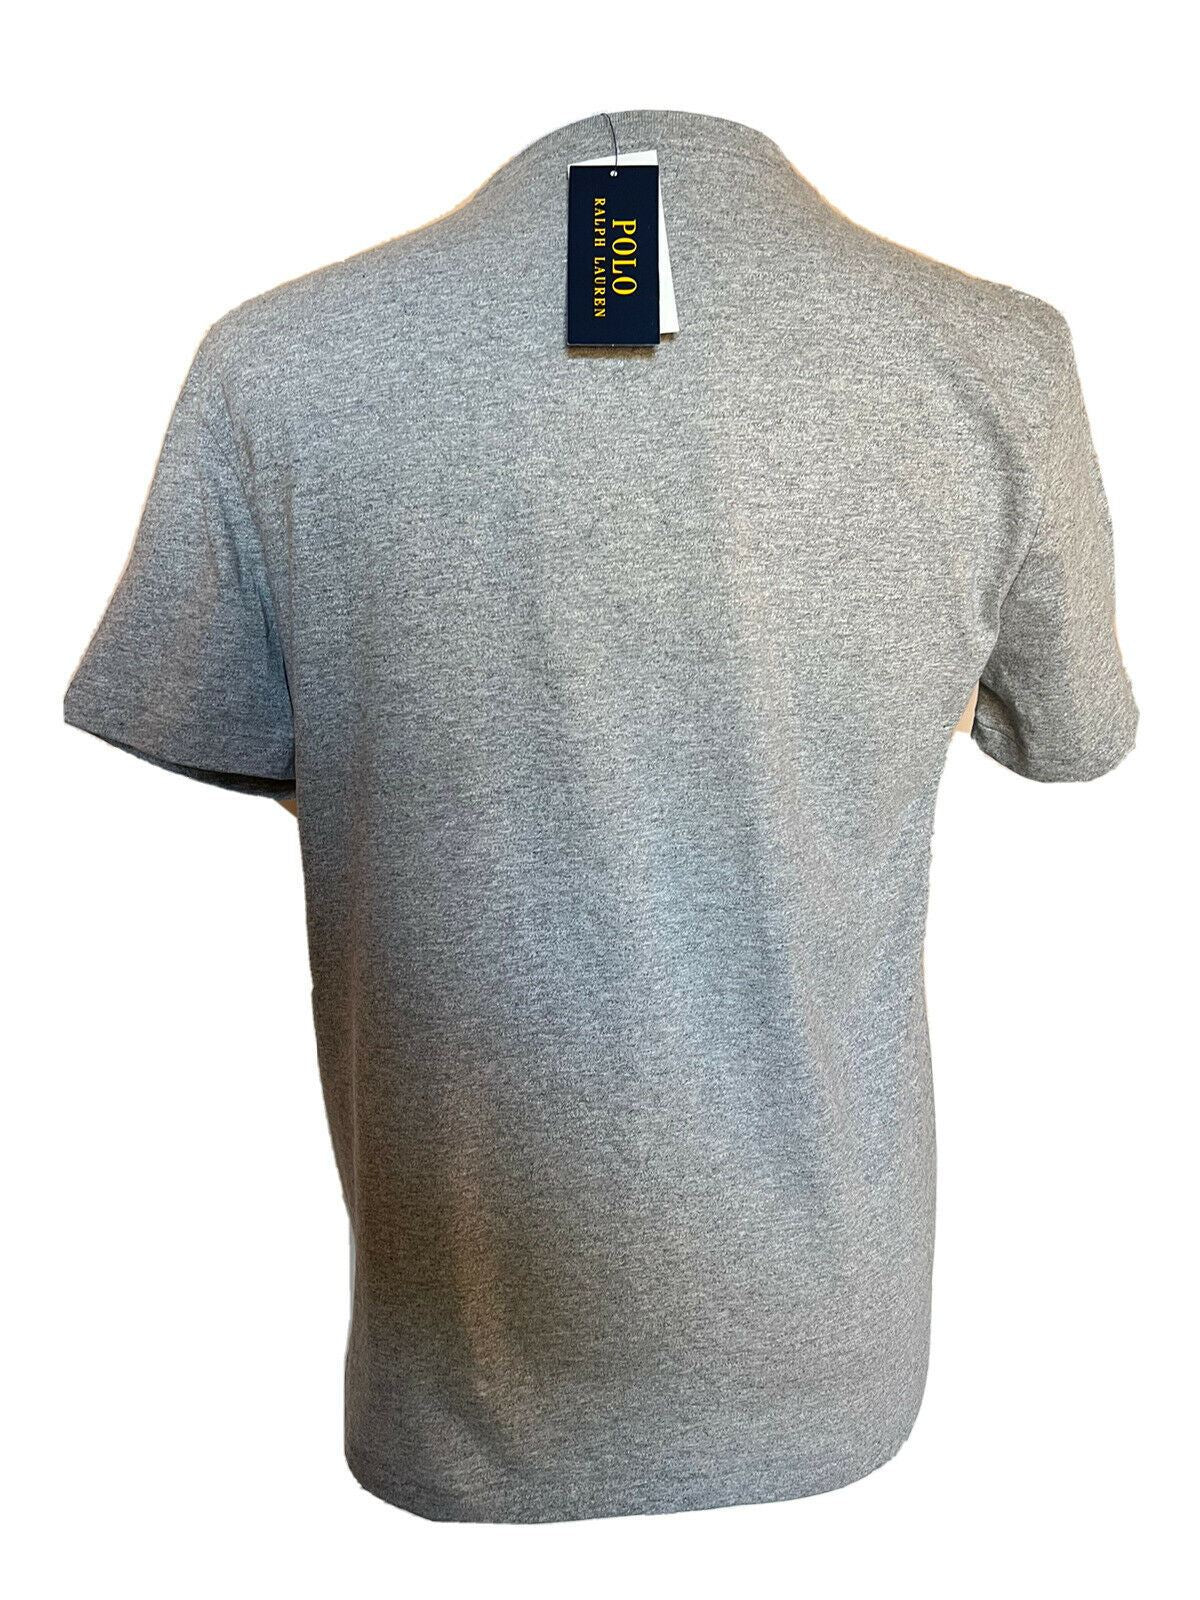 NWT 59.50 Polo Ralph Lauren Bear T-Shirt Gray 2XL